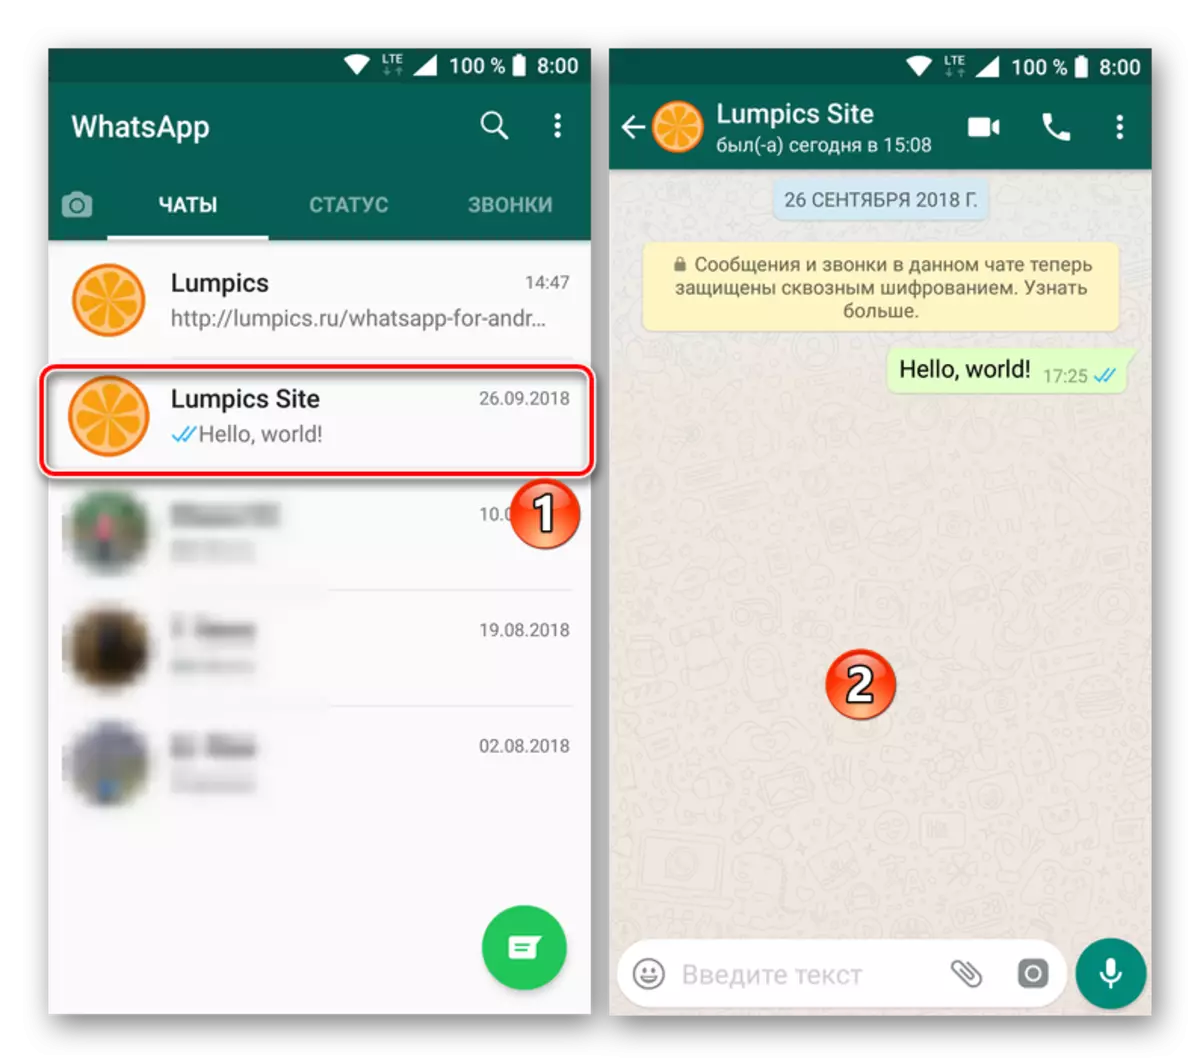 เปลี่ยนเป็นแชทสำหรับการทำความสะอาดในแอปพลิเคชัน Whatsapp สำหรับ Android